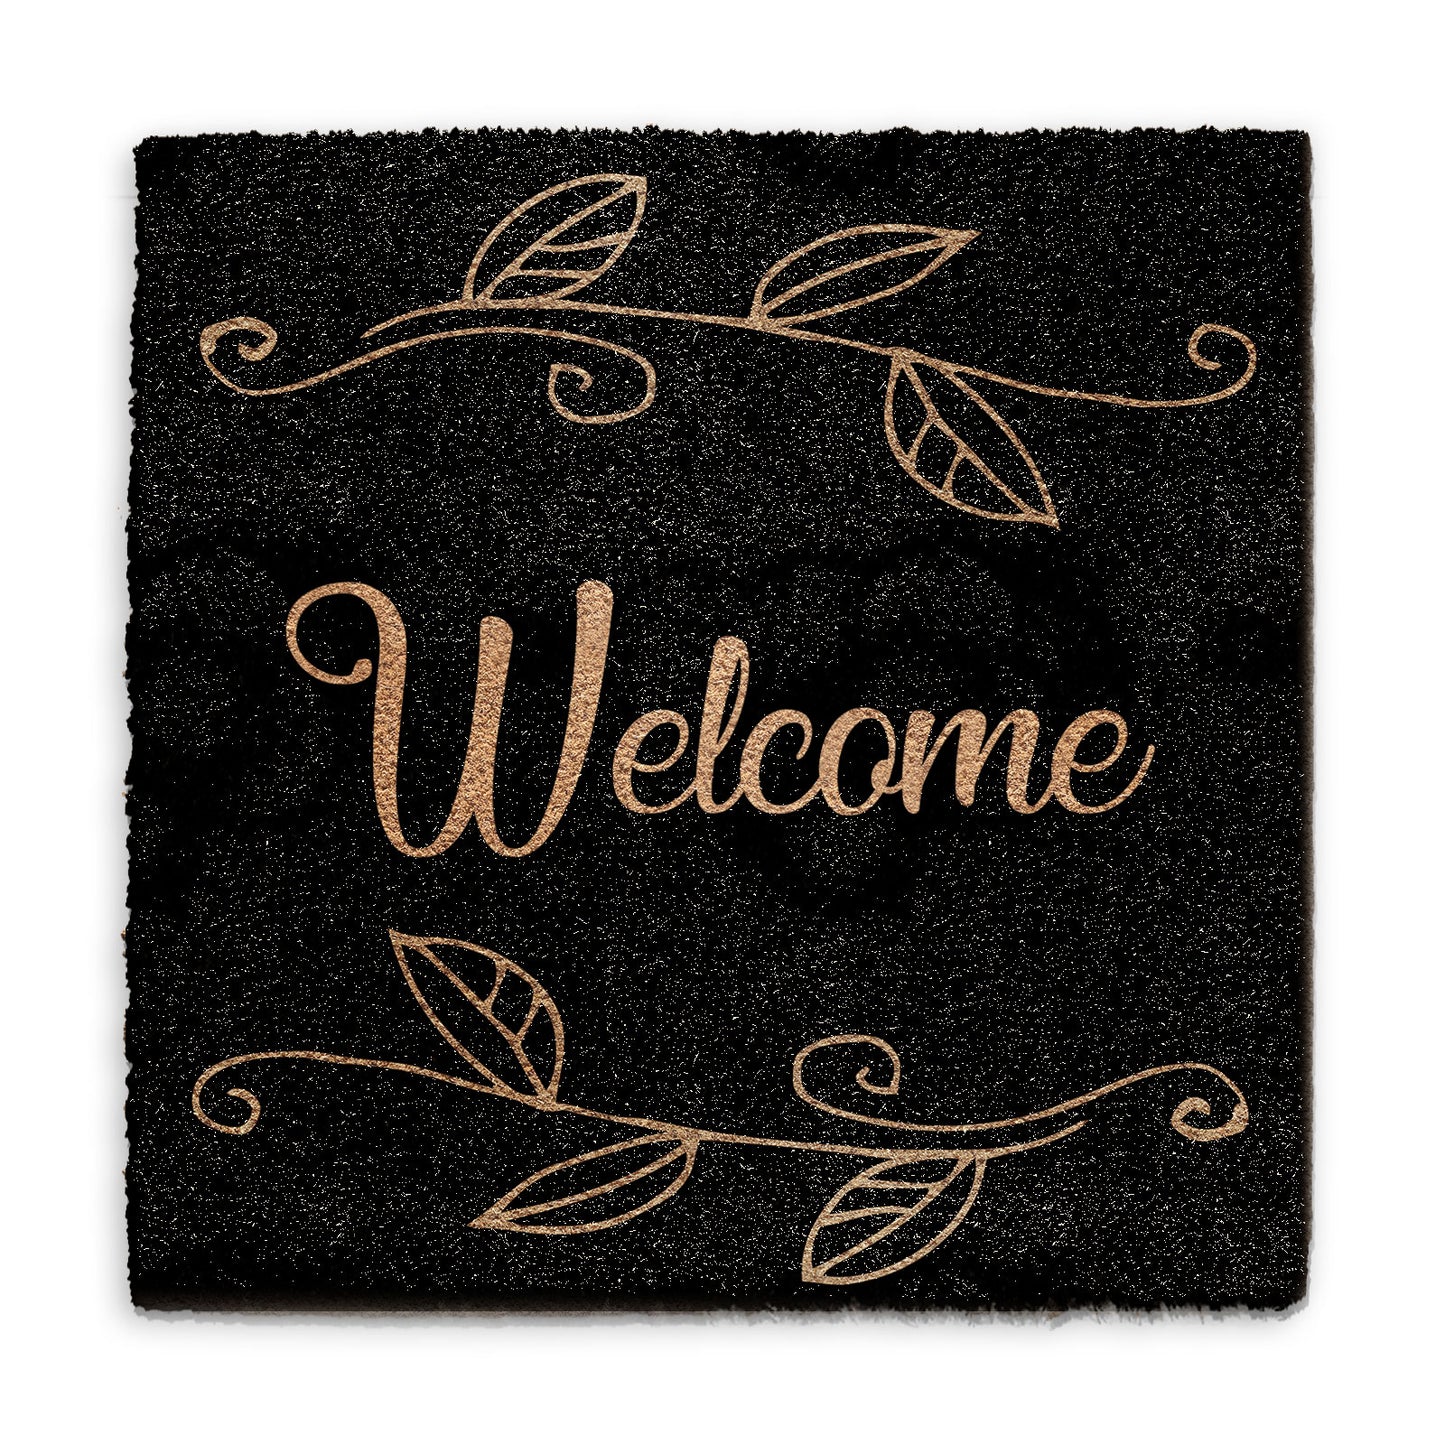 Coir Doormat - Black Floral Welcome